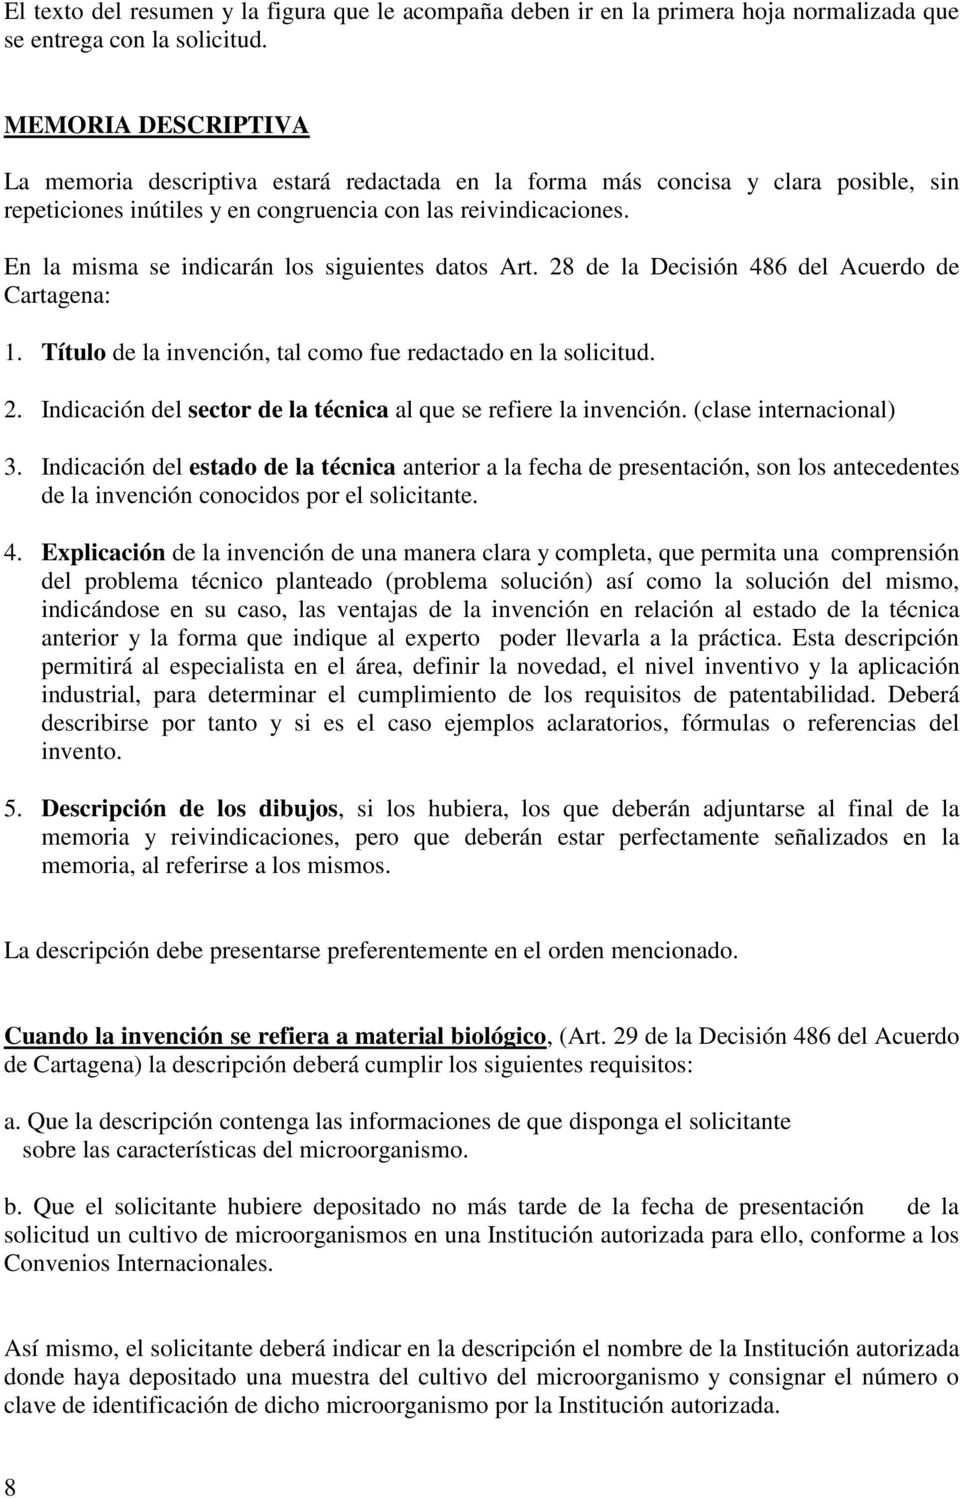 En la misma se indicarán los siguientes datos Art. 28 de la Decisión 486 del Acuerdo de Cartagena: 1. Título de la invención, tal como fue redactado en la solicitud. 2. Indicación del sector de la técnica al que se refiere la invención.